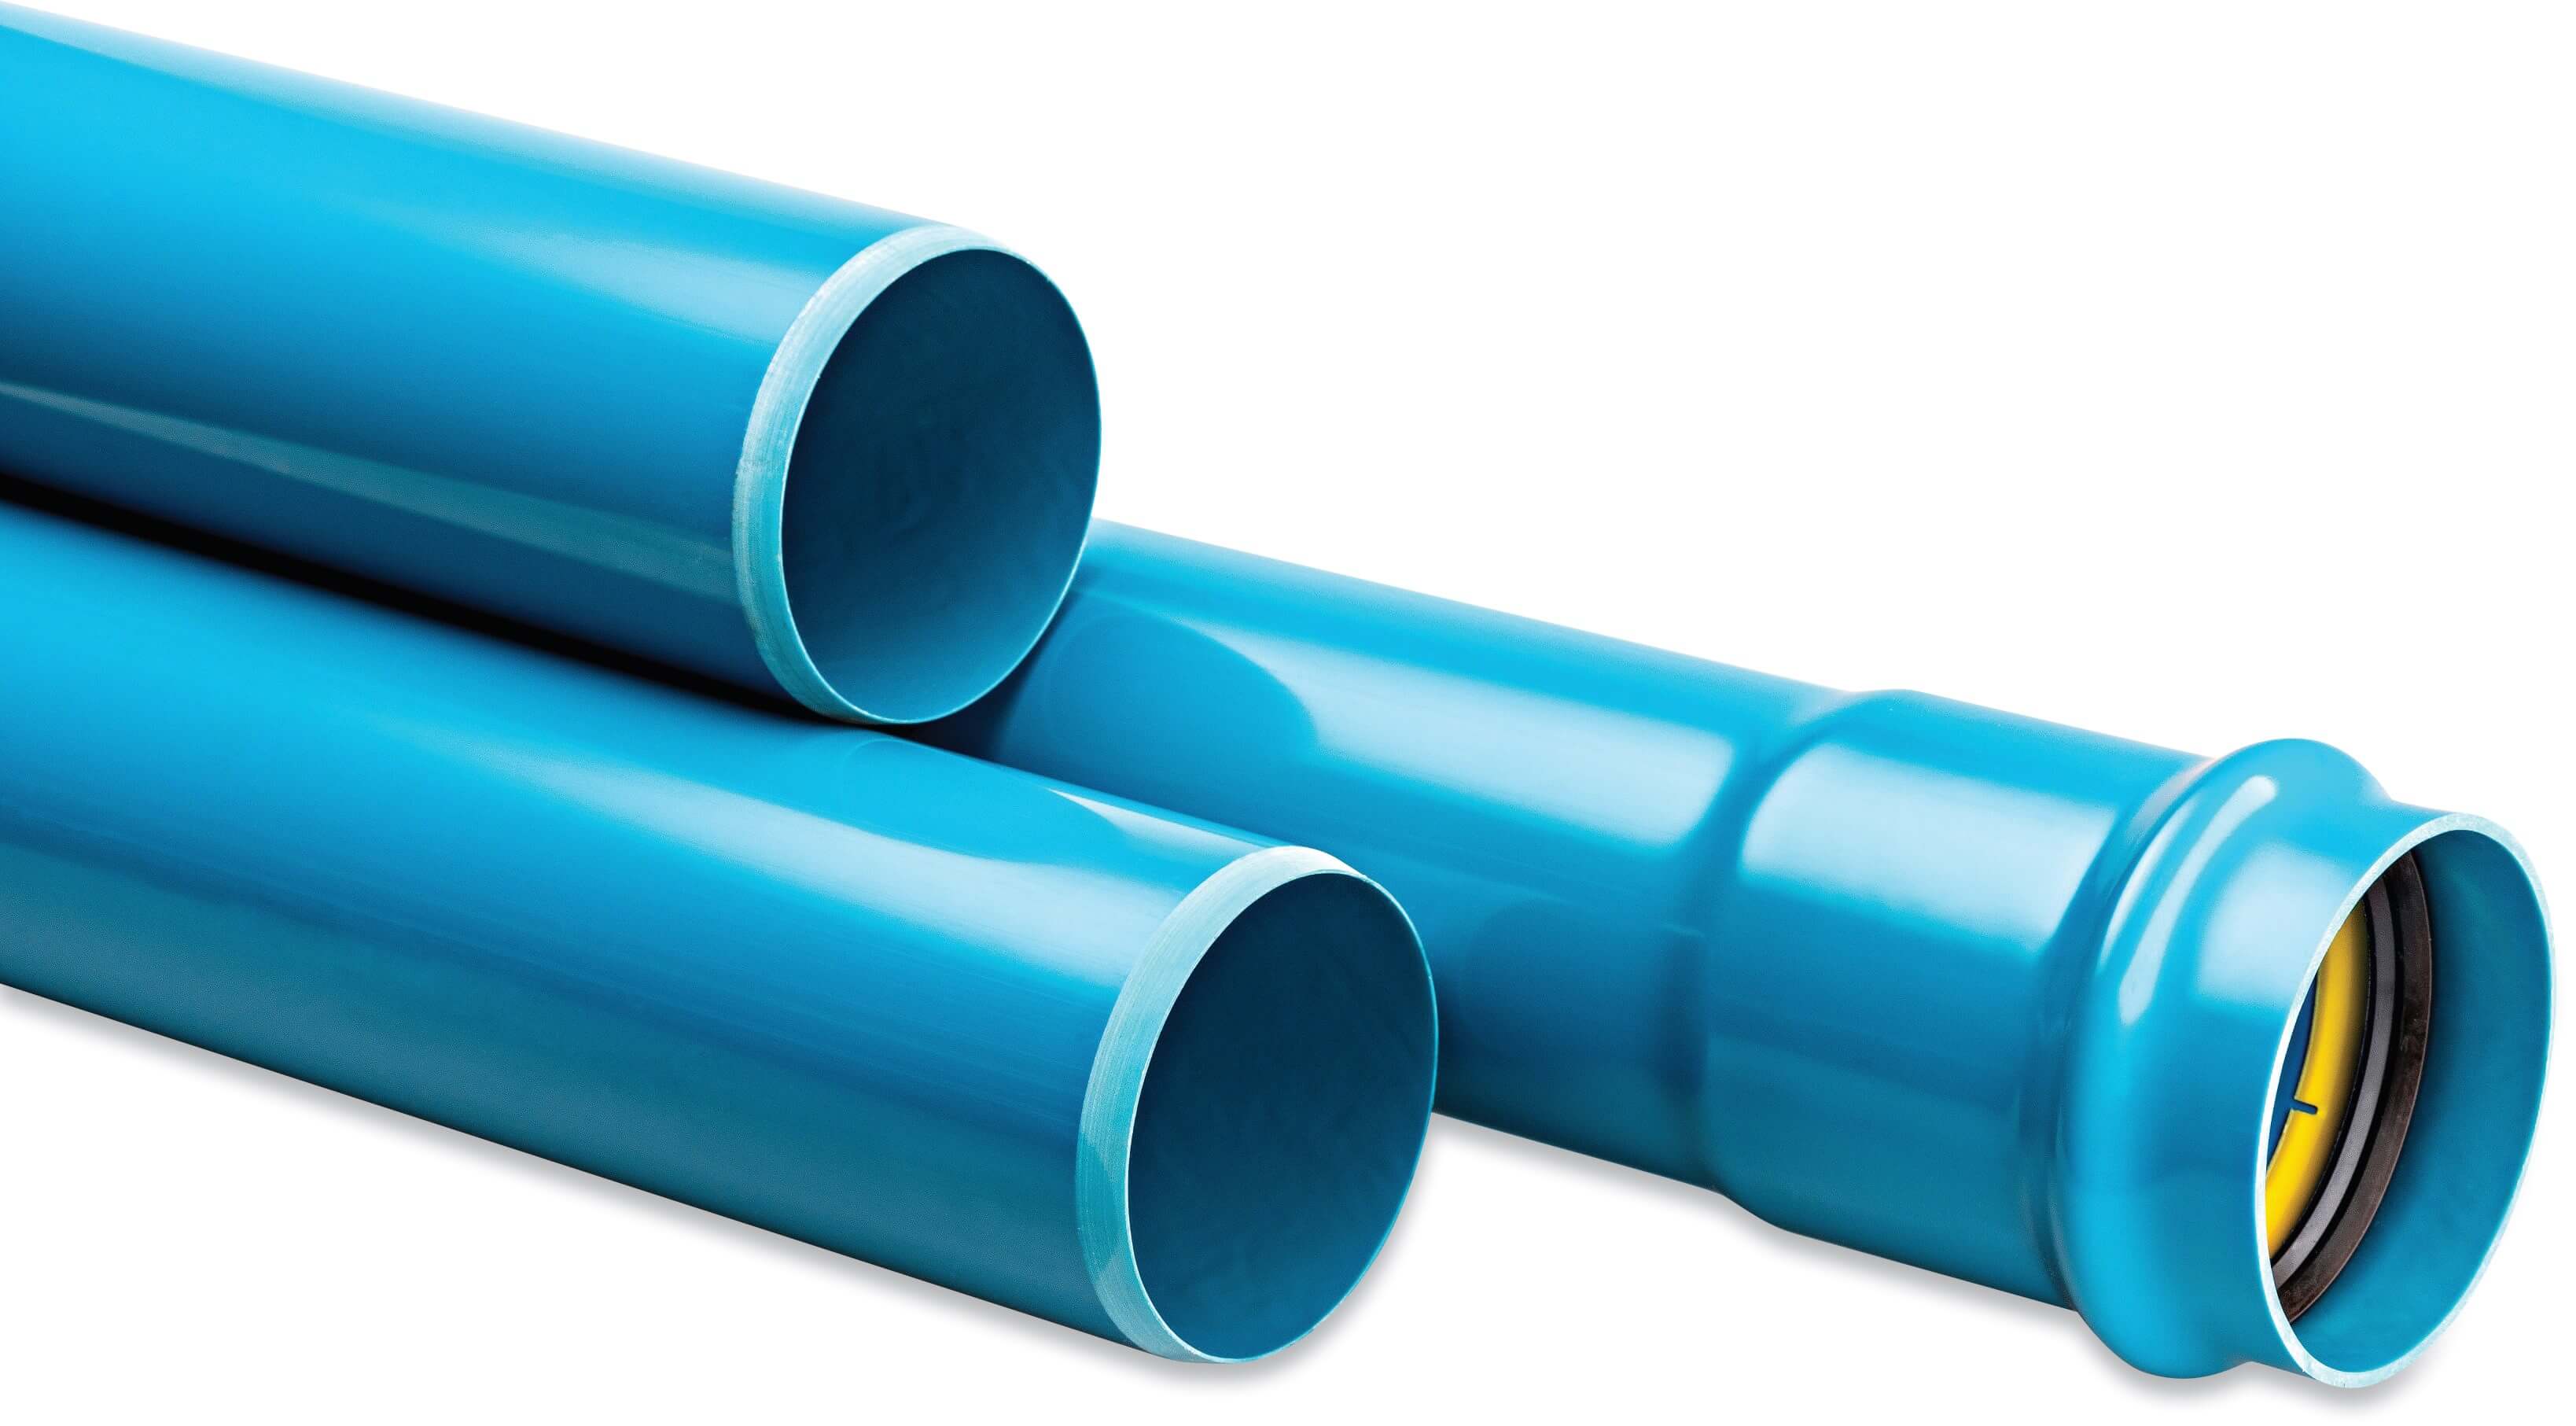 Rura ciśnieniowa PVC-A 90 mm x 2.6 mm pierścień uszczelniający x gładkie ISO-PN10 niebieski 6m KIWA